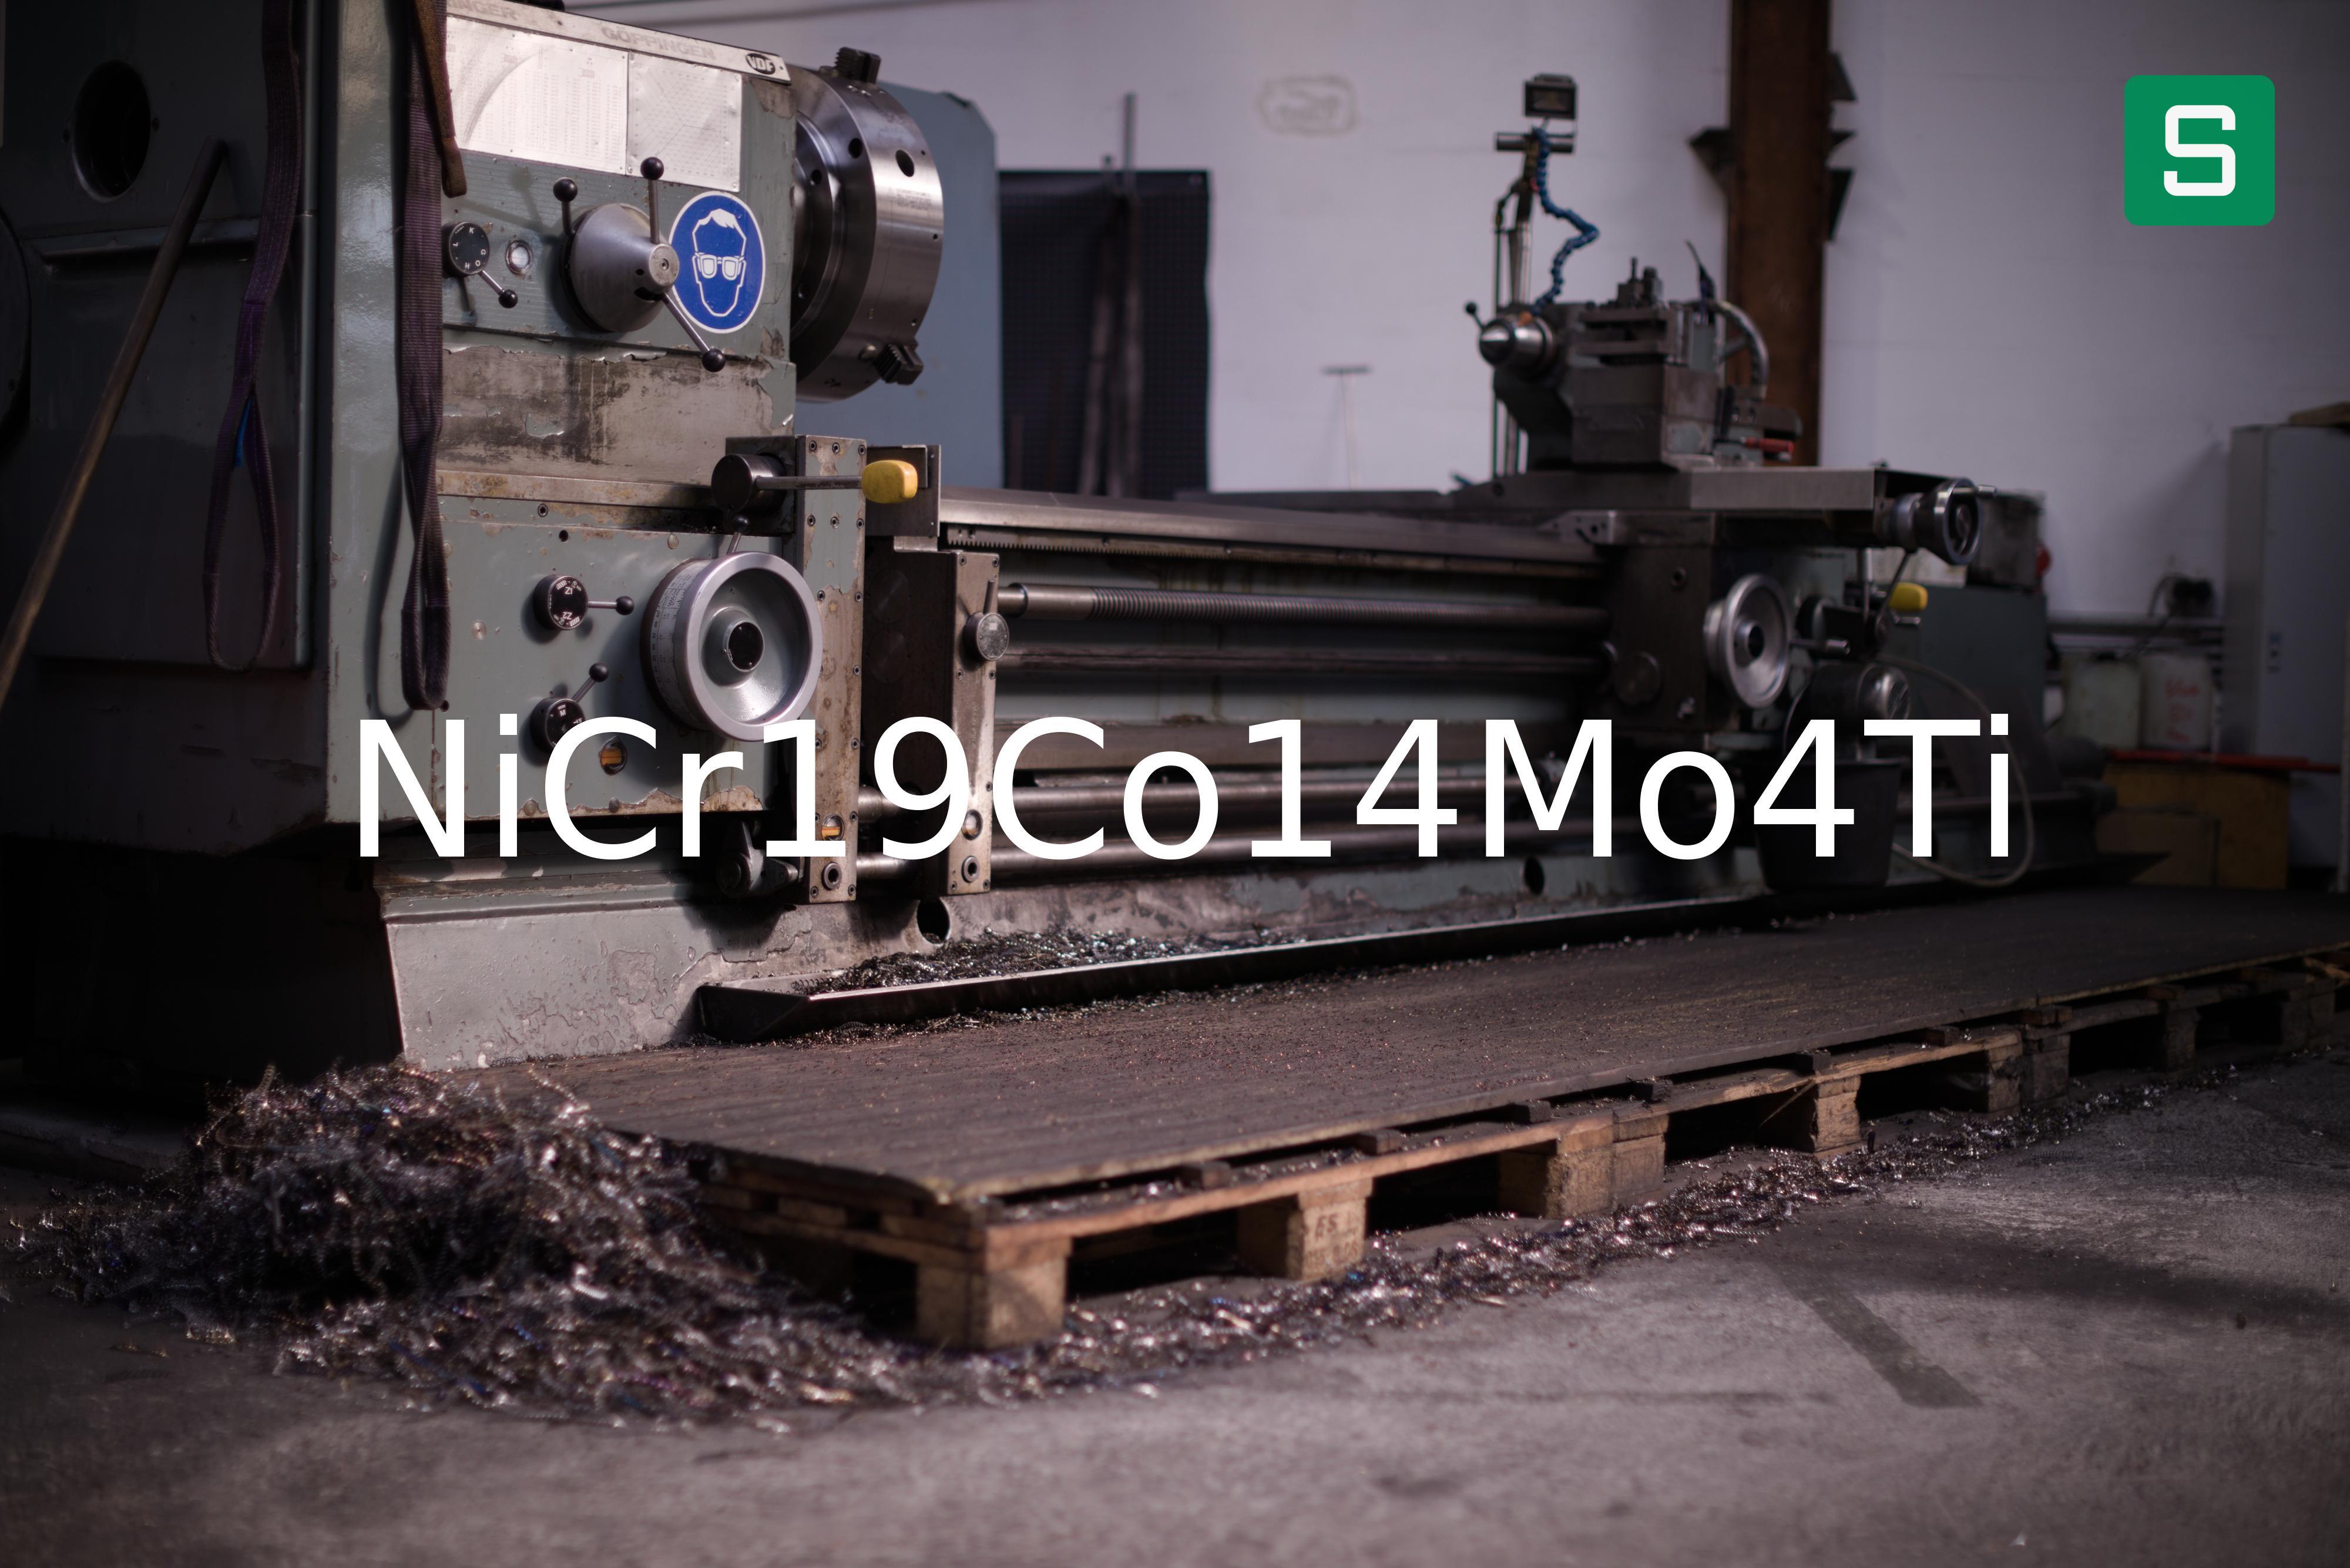 Steel Material: NiCr19Co14Mo4Ti